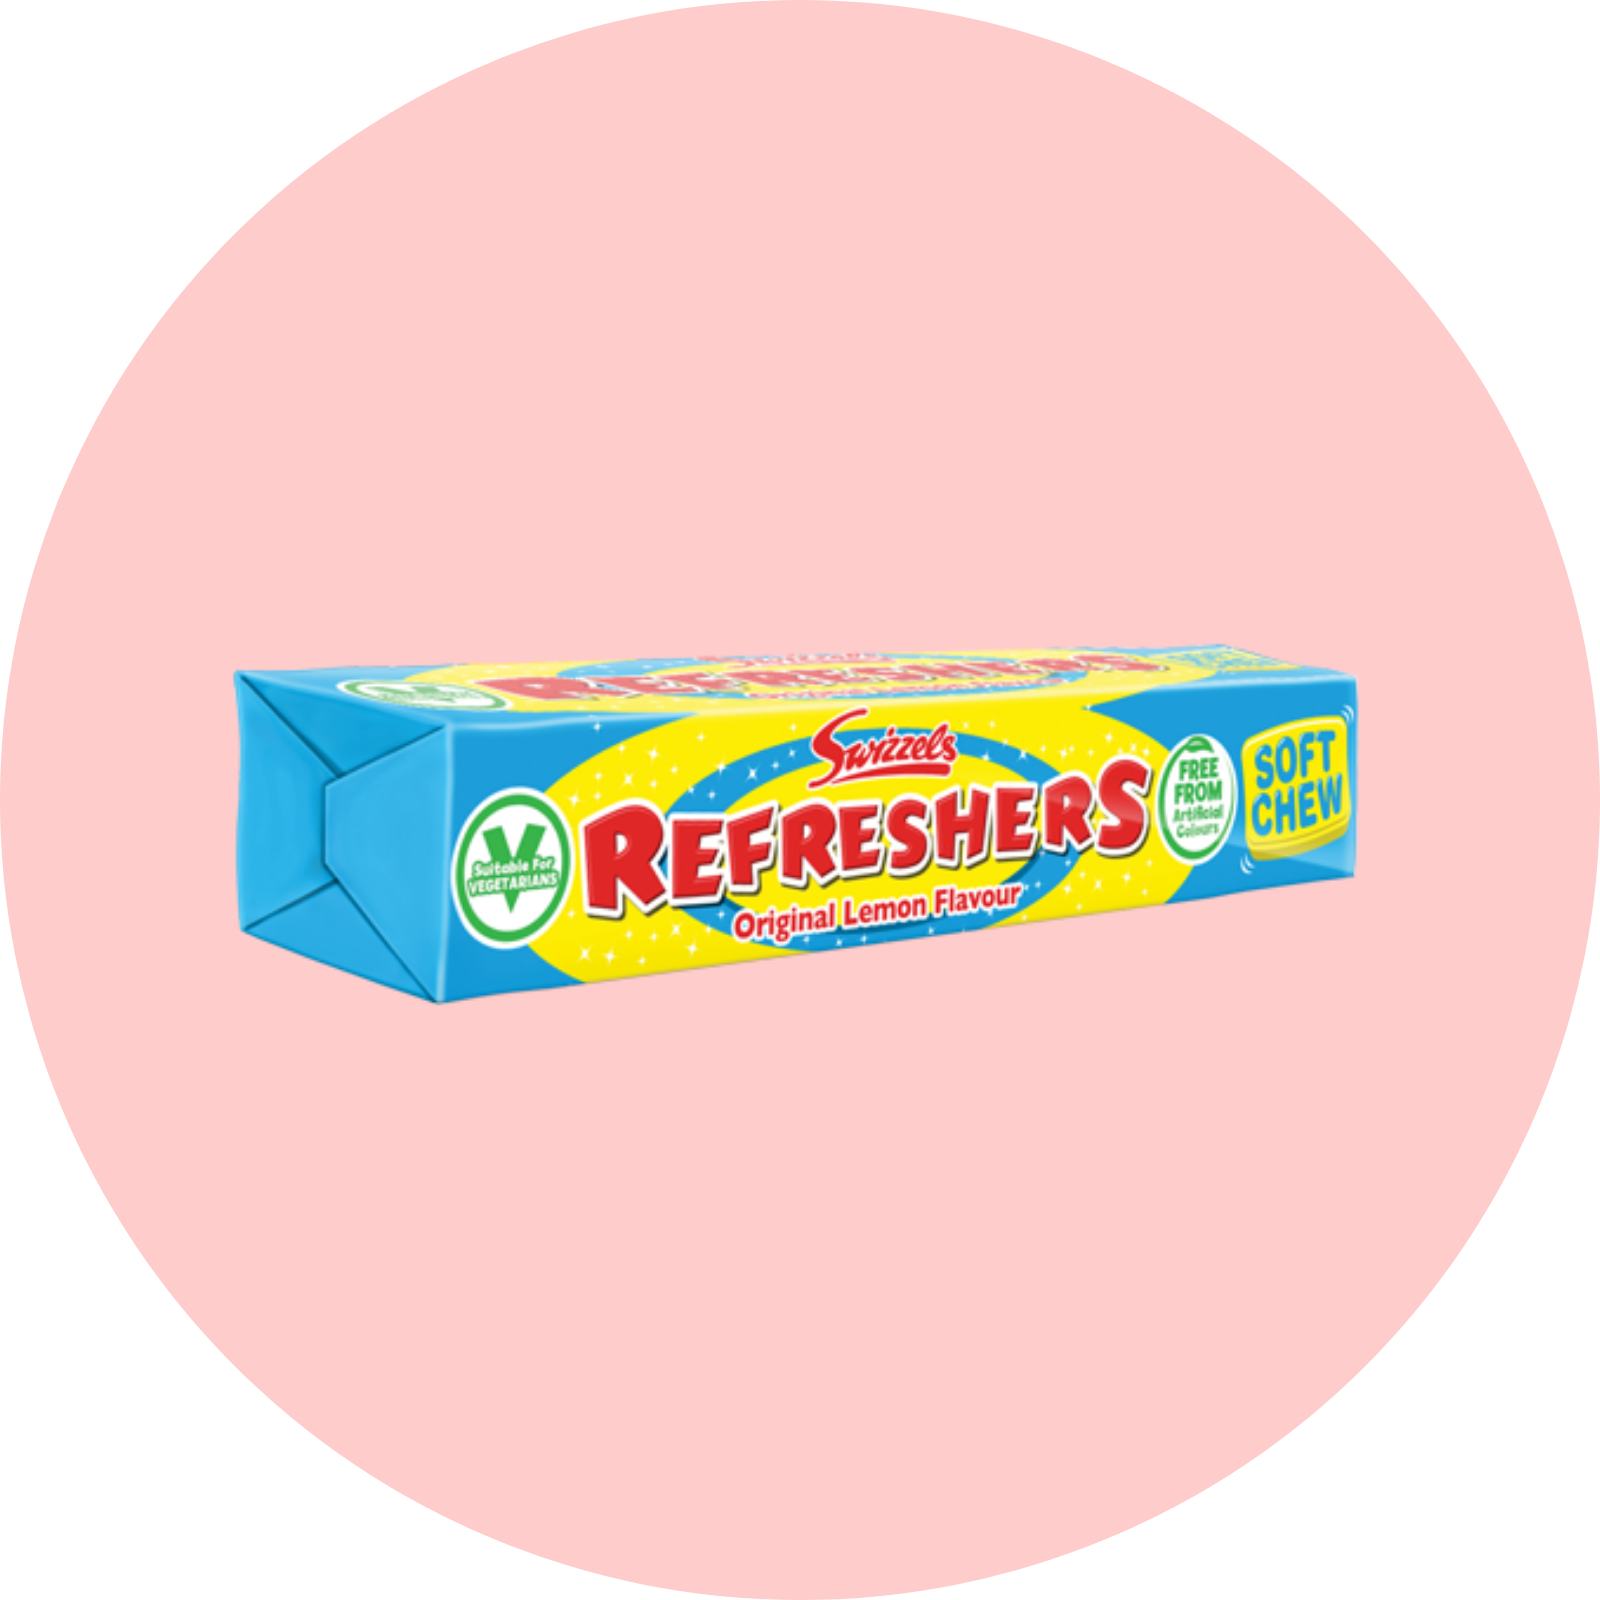 Refreshers Chews Original Lemon